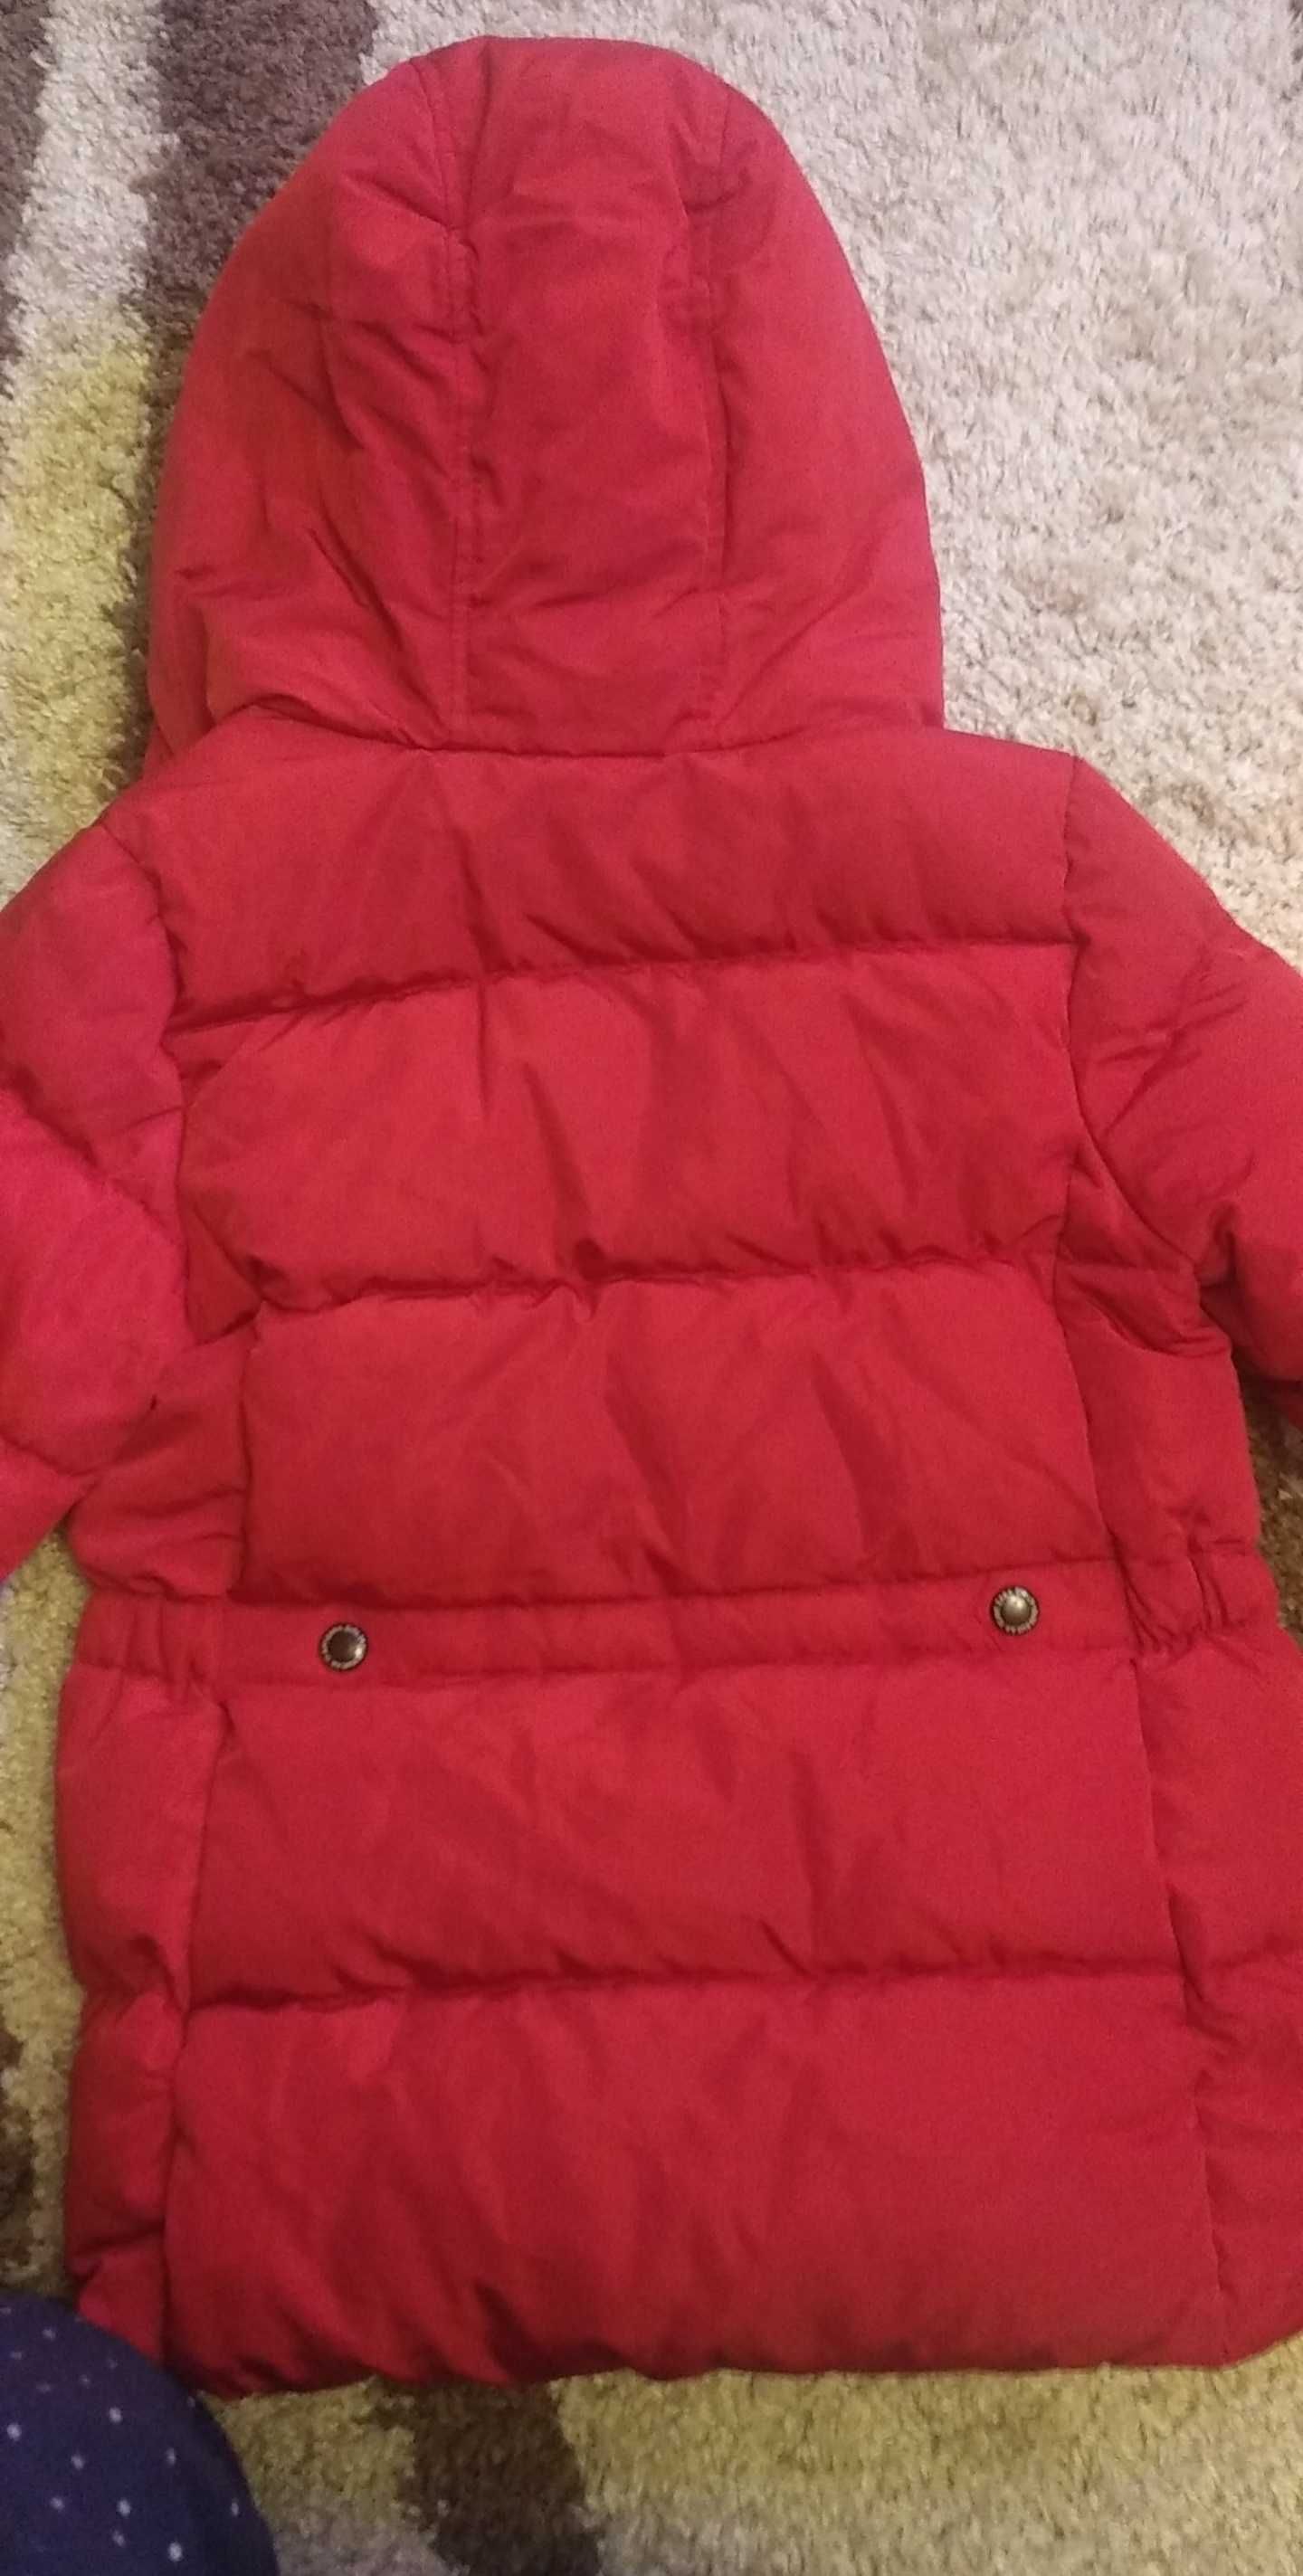 Зимова дитяча куртка від Zara на пуху вік 9 років/134 см.